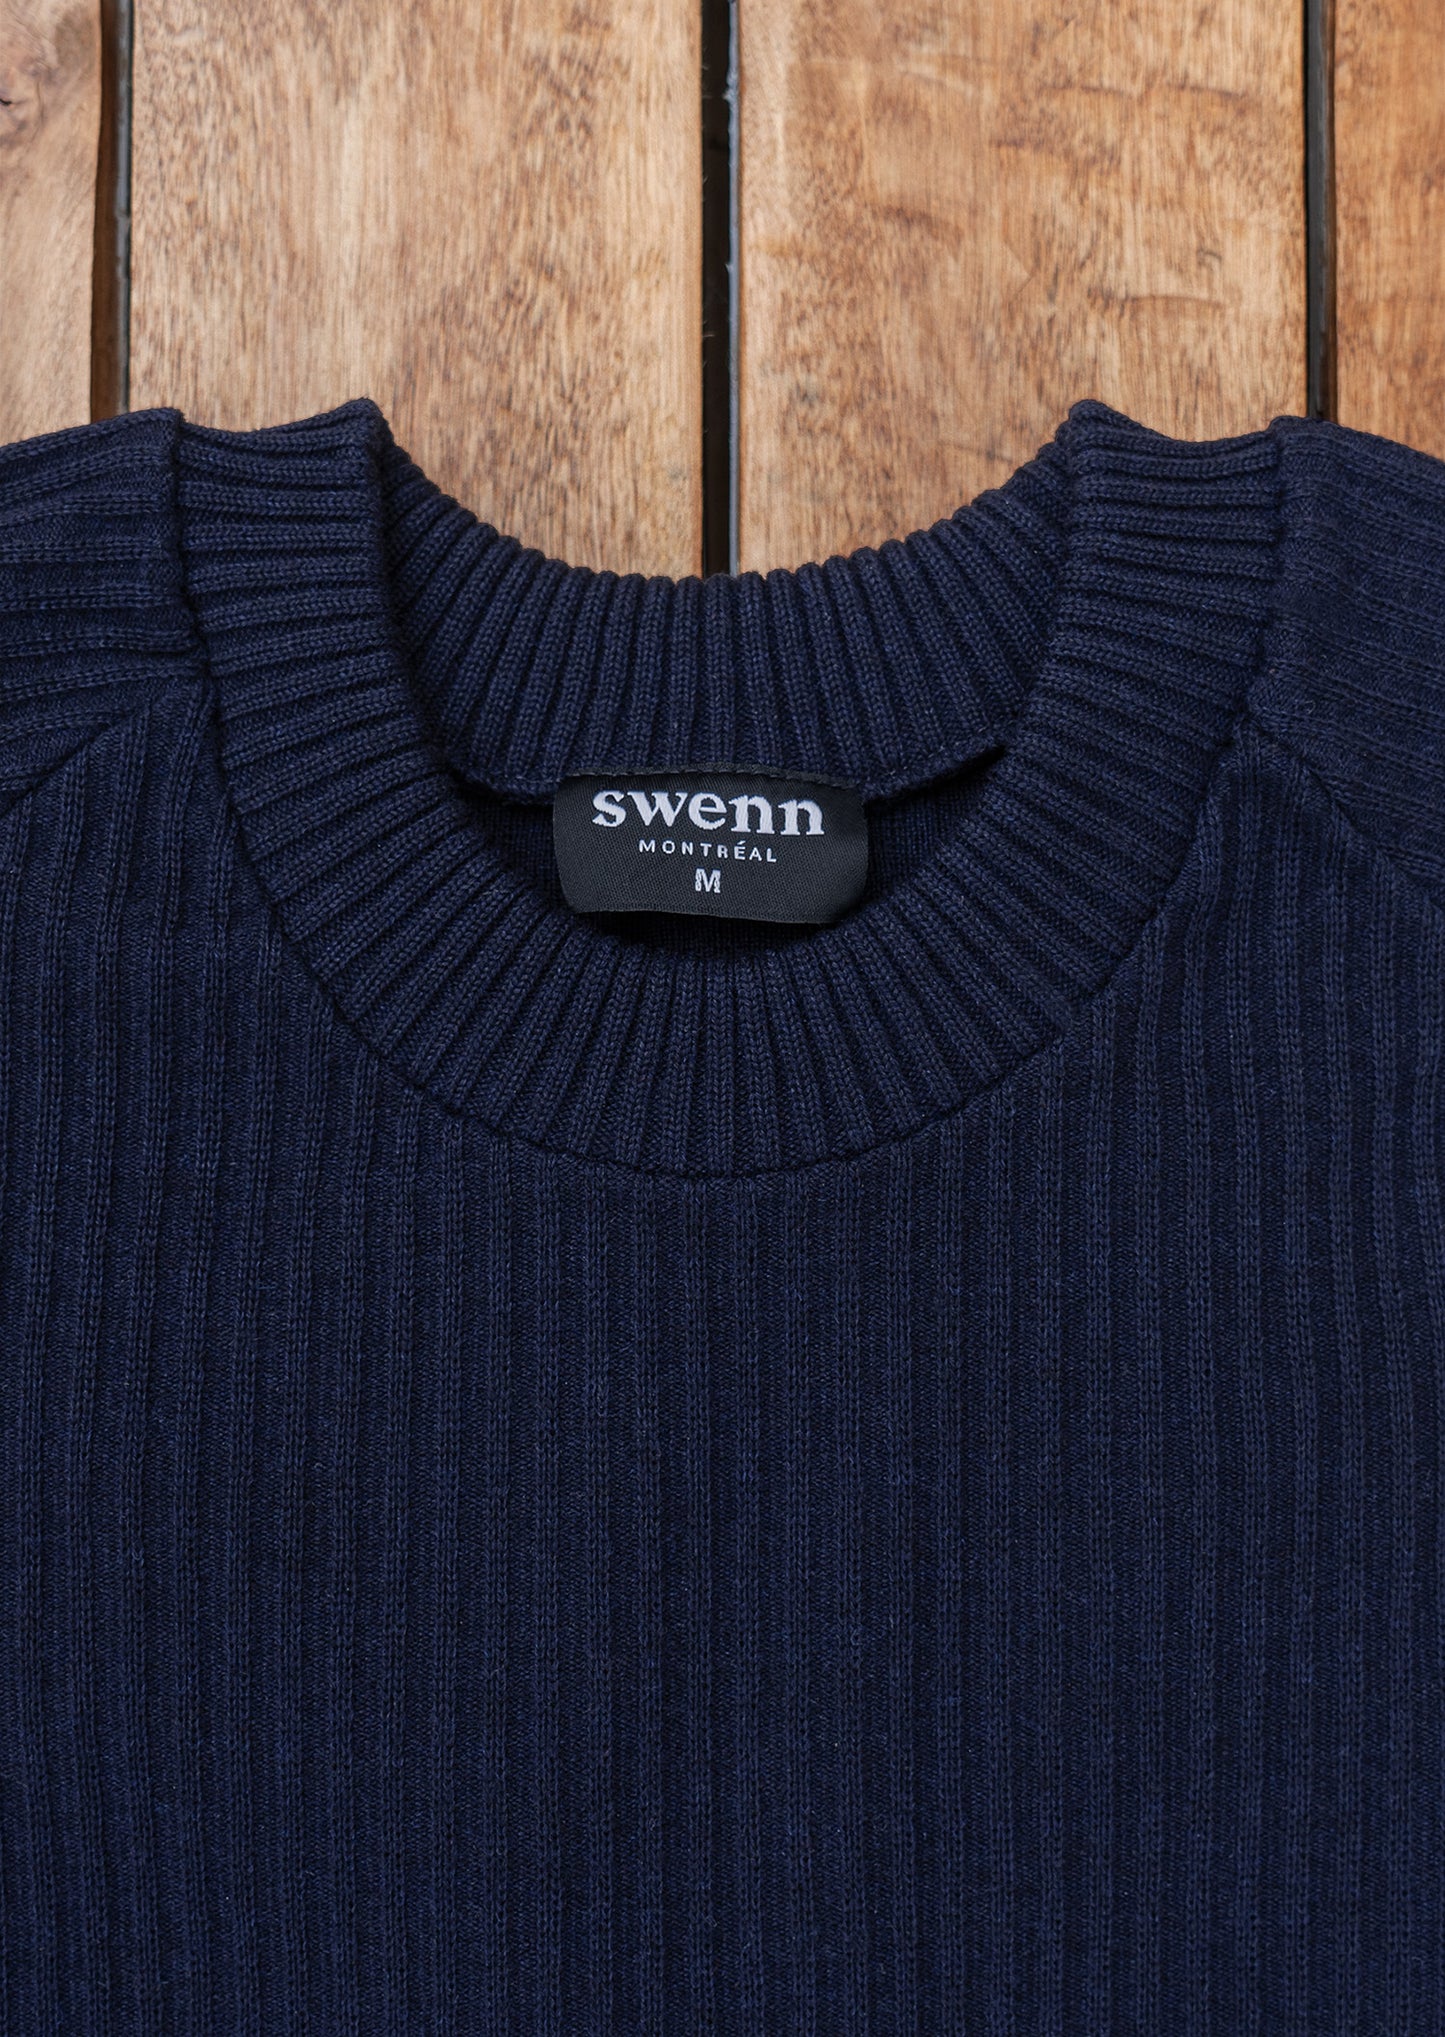 Rimouski - sweater - navy